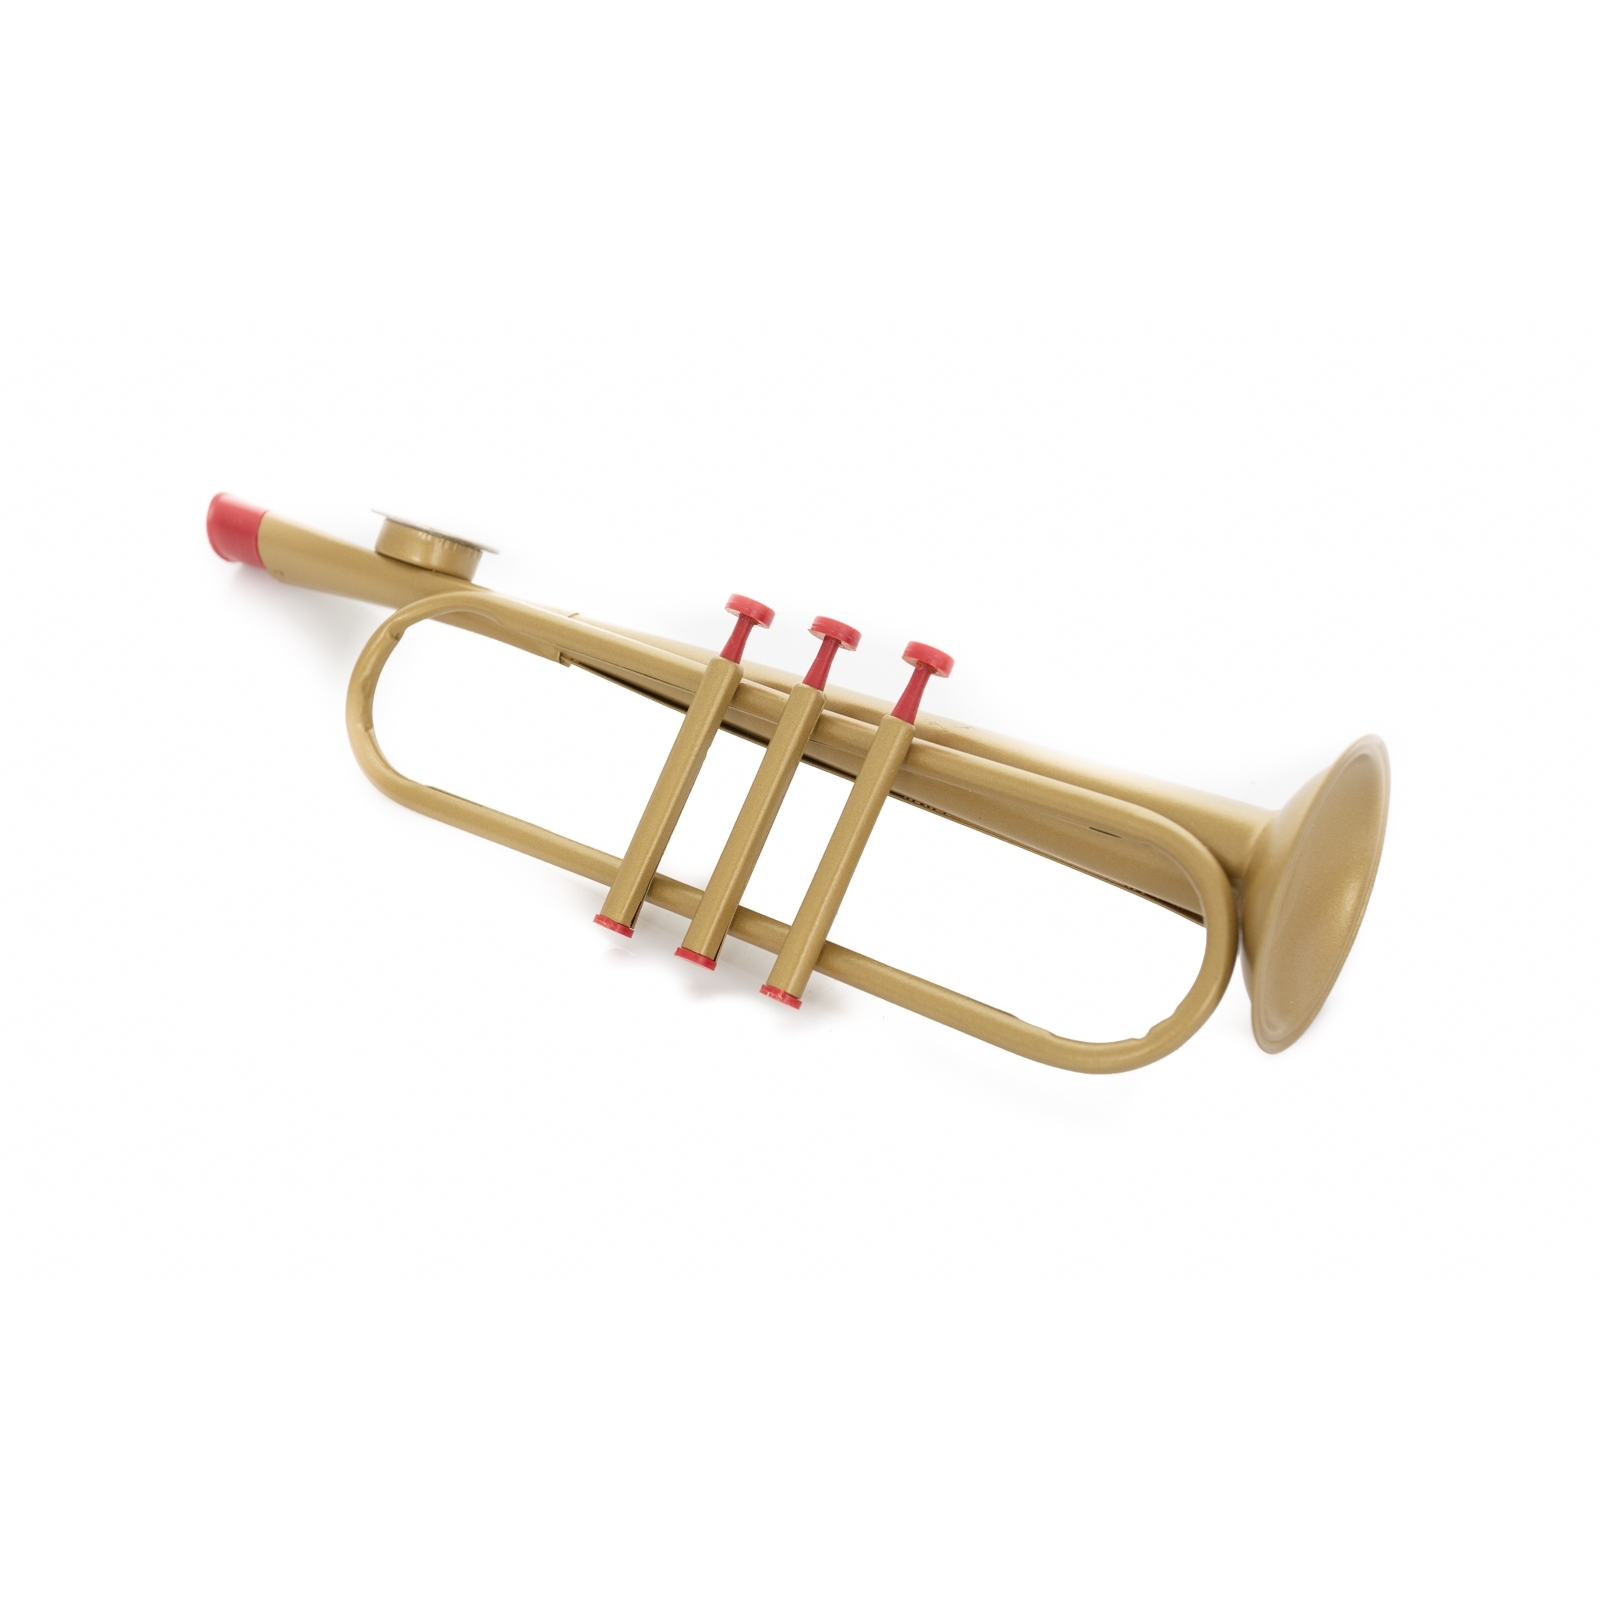 Kazoobie Kazoos - Metal Trumpet Kazoo